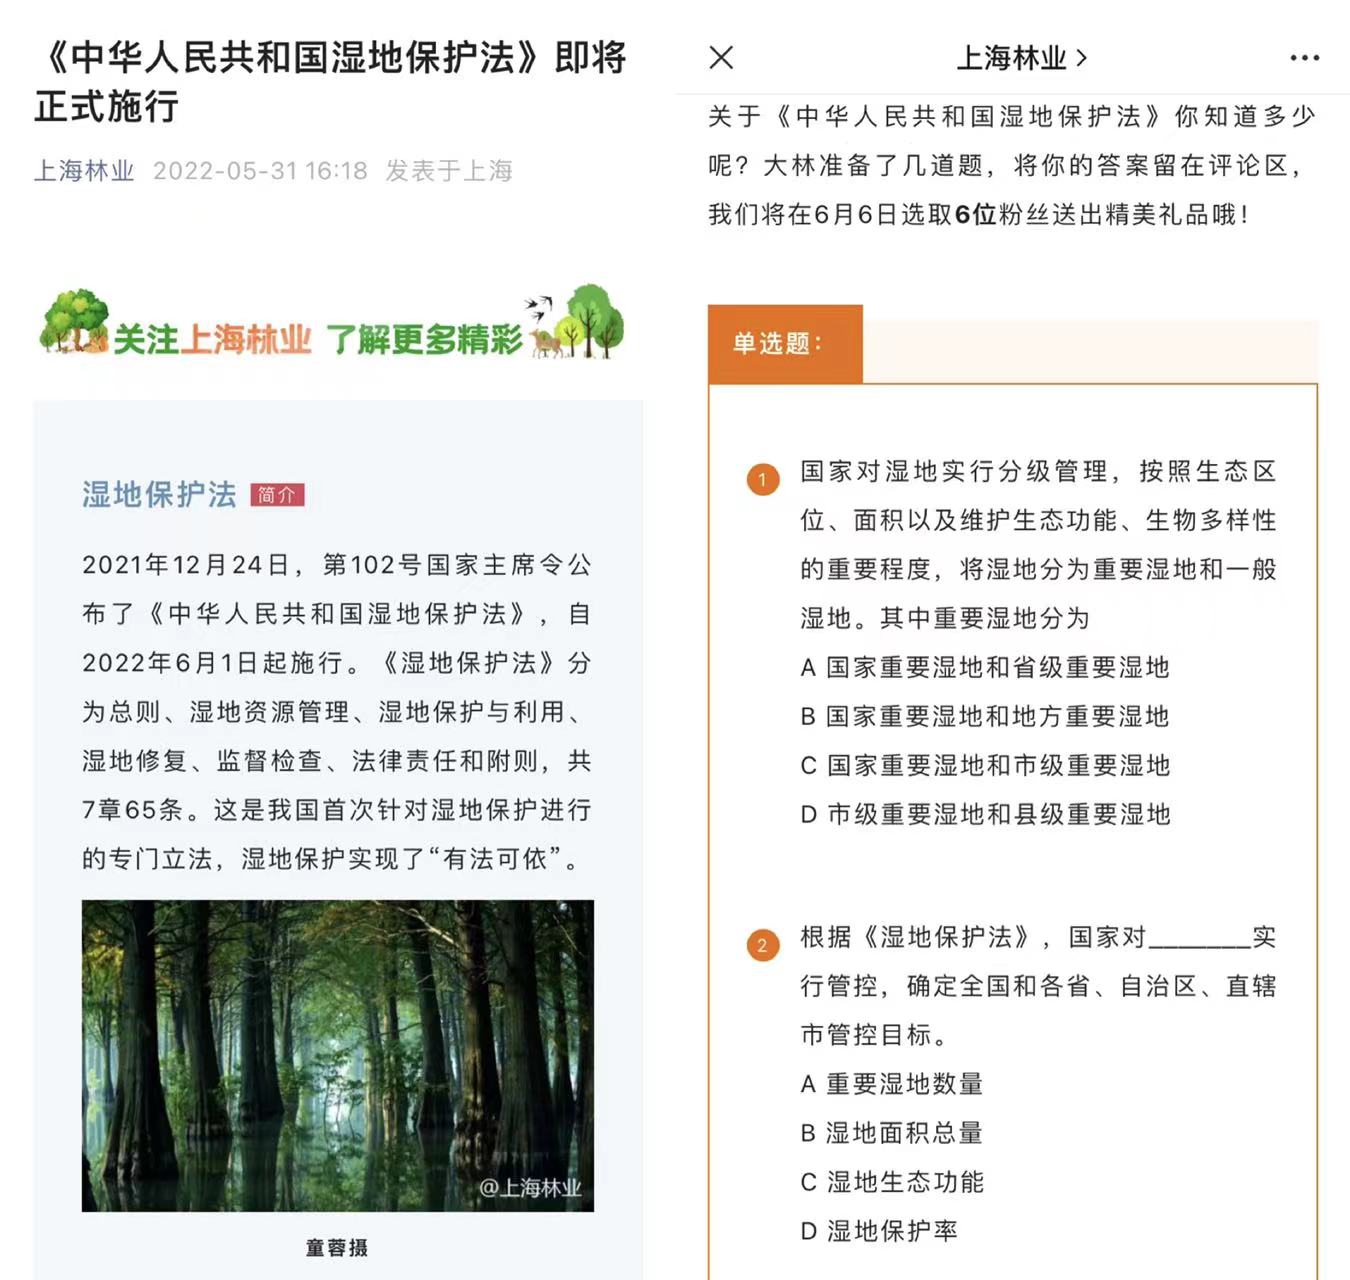 市林业总站开展《中华人民共和国湿地保护法》宣传工作2.jpg